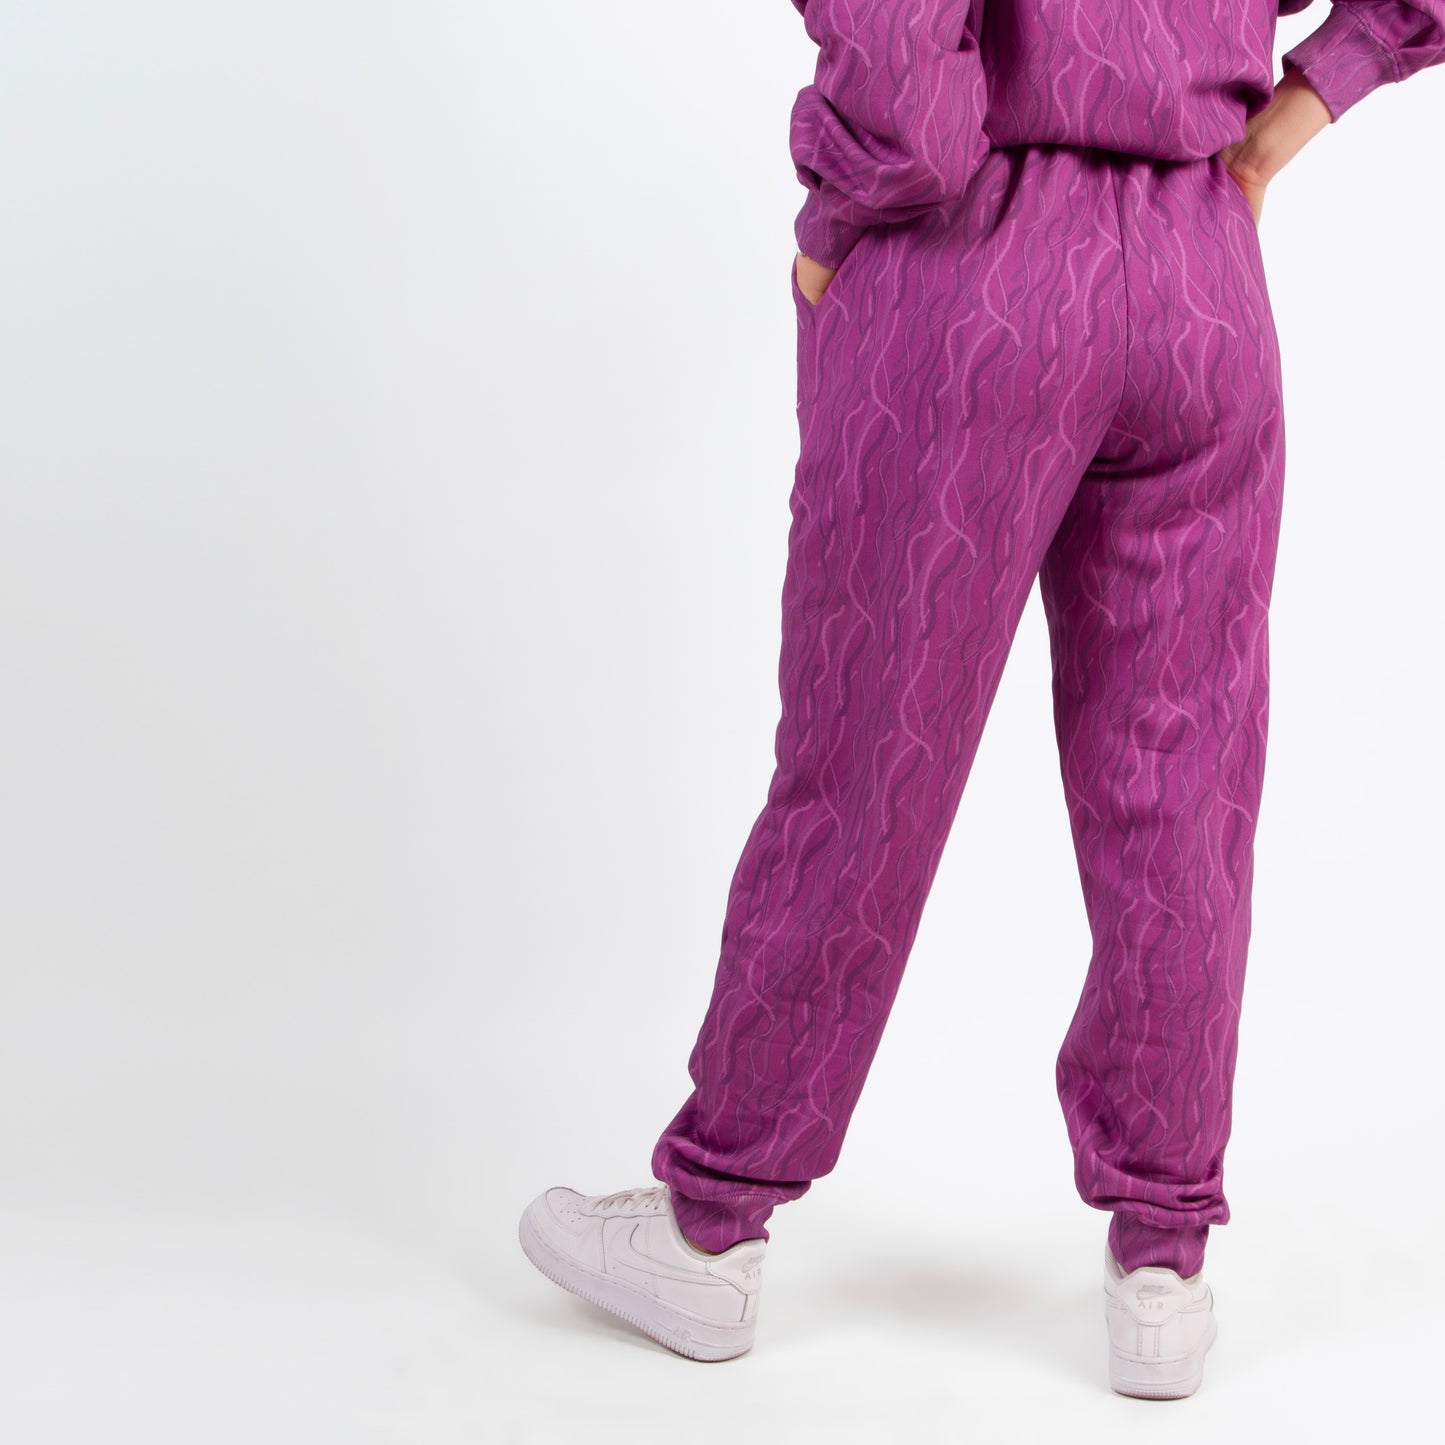 lucewear : femme portant un pantalon de survêtement violet